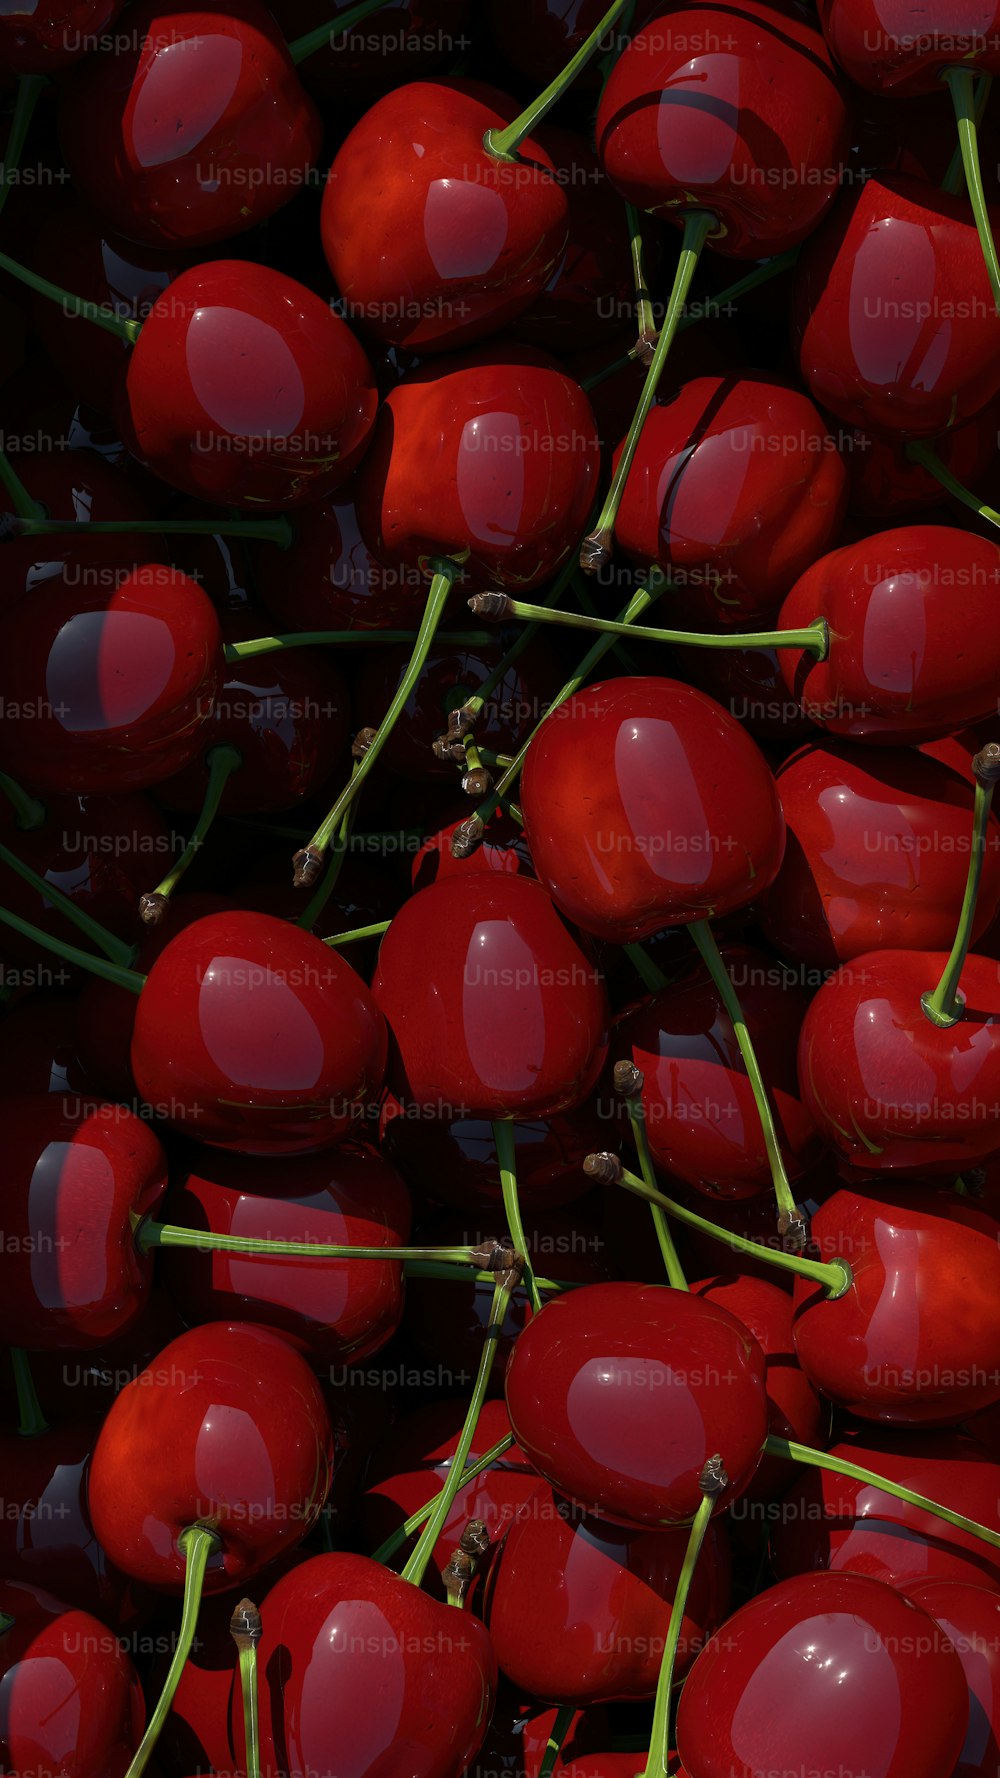 ein Haufen roter Kirschen, die übereinander sitzen